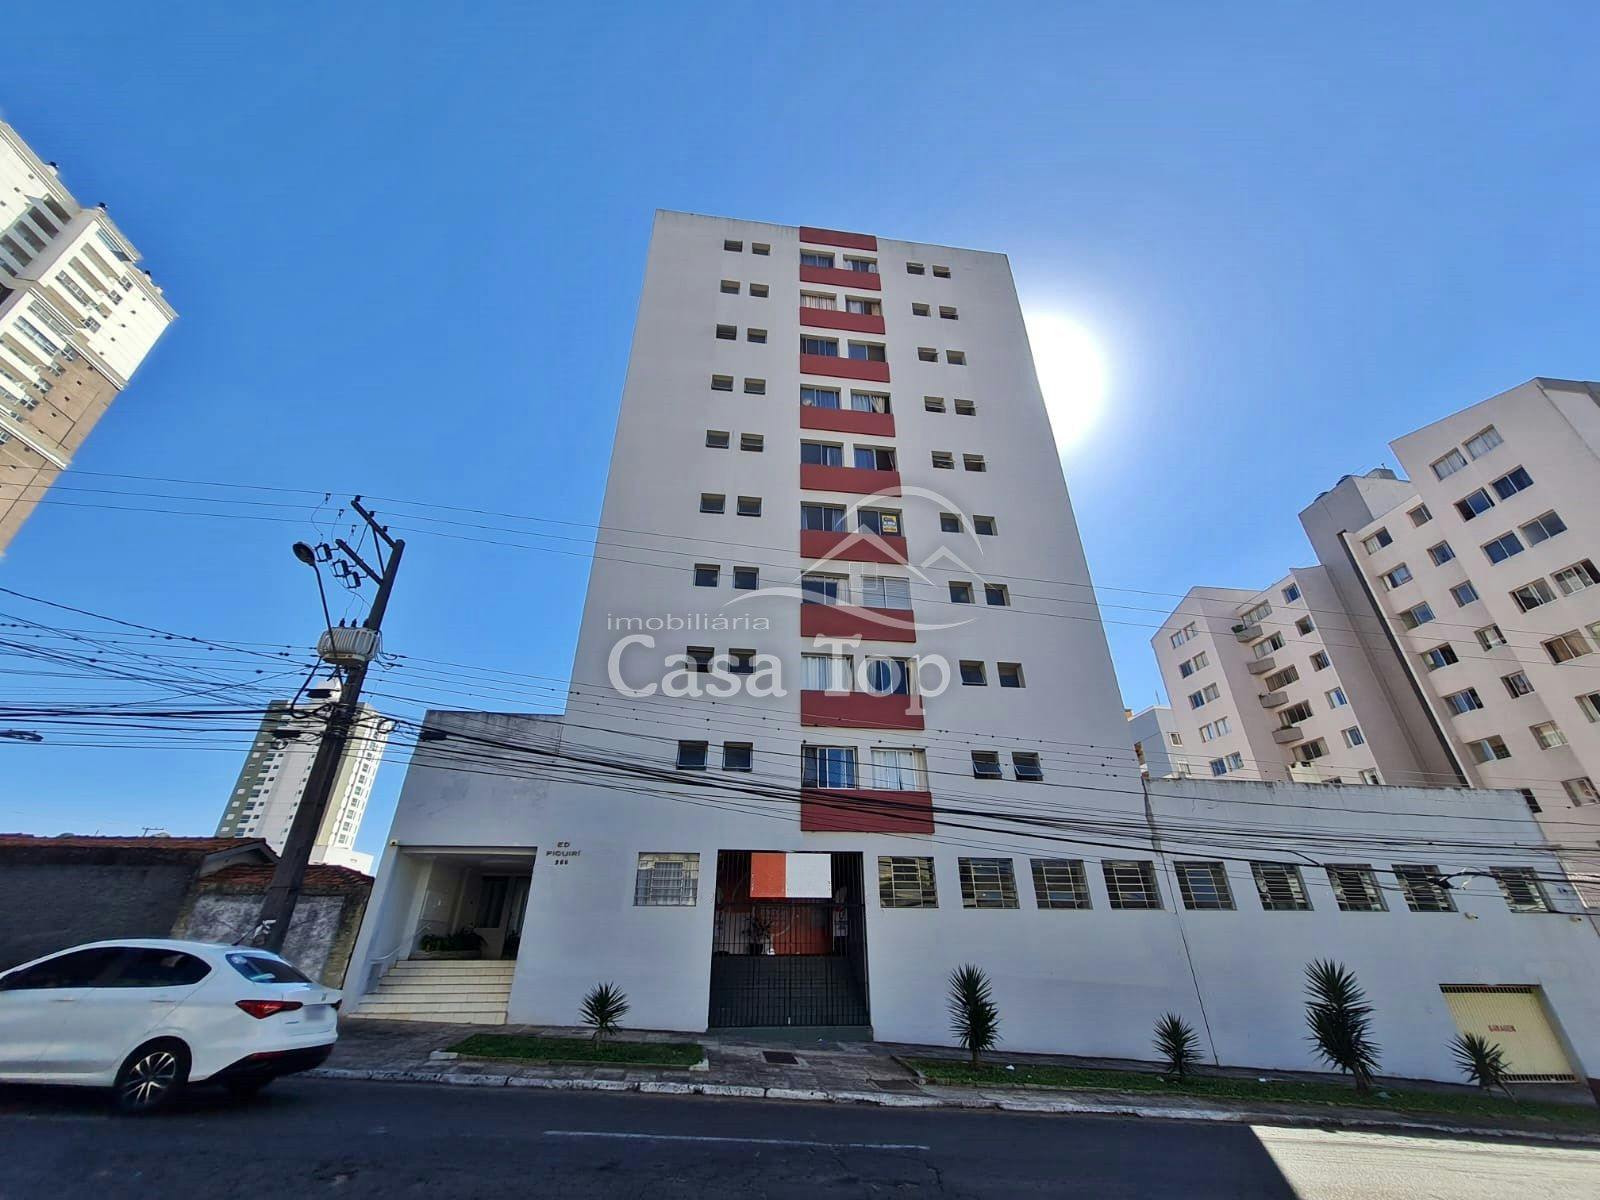 Apartamento semimobiliado à venda Centro - Edifício Piquiri 